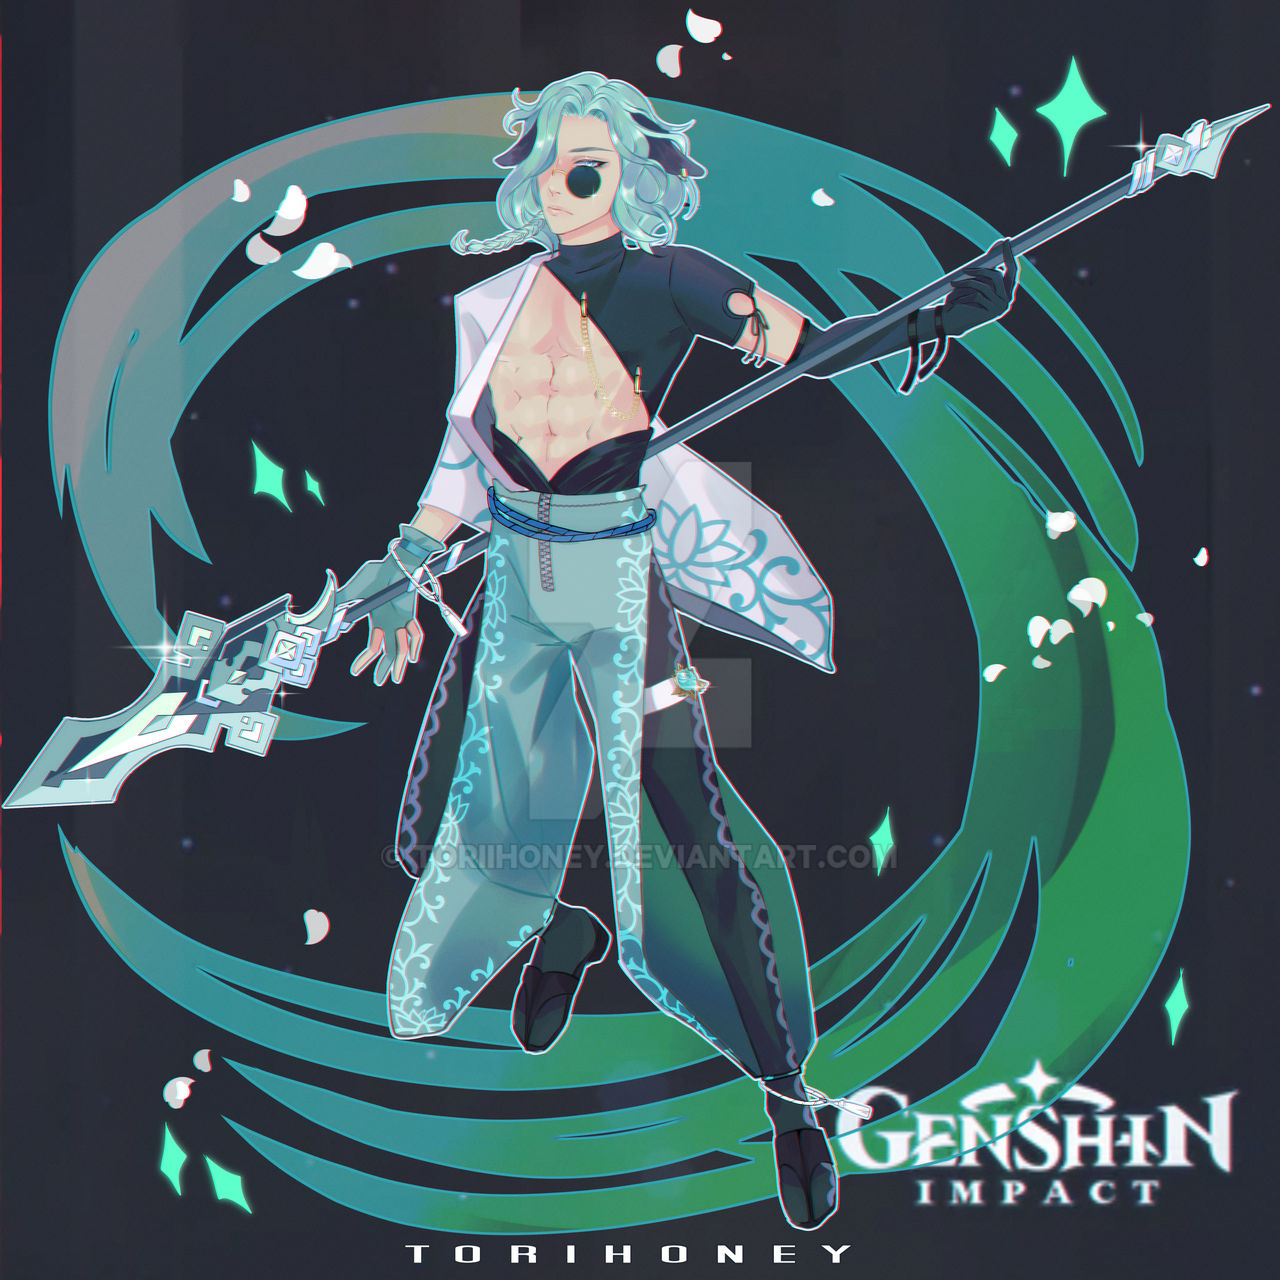 Genshin Impact OC Generator: Với Genshin Impact OC Generator, bạn sẽ tạo ra nhân vật chưa từng có trước đây, với tất cả các khả năng và tính năng mới nhất. Bạn có sẵn sàng để trải nghiệm một tương lai mới với nhân vật tạo ra bởi riêng bạn? Hãy truy cập vào bộ công cụ này và khám phá điều mới mẻ của Genshin Impact.